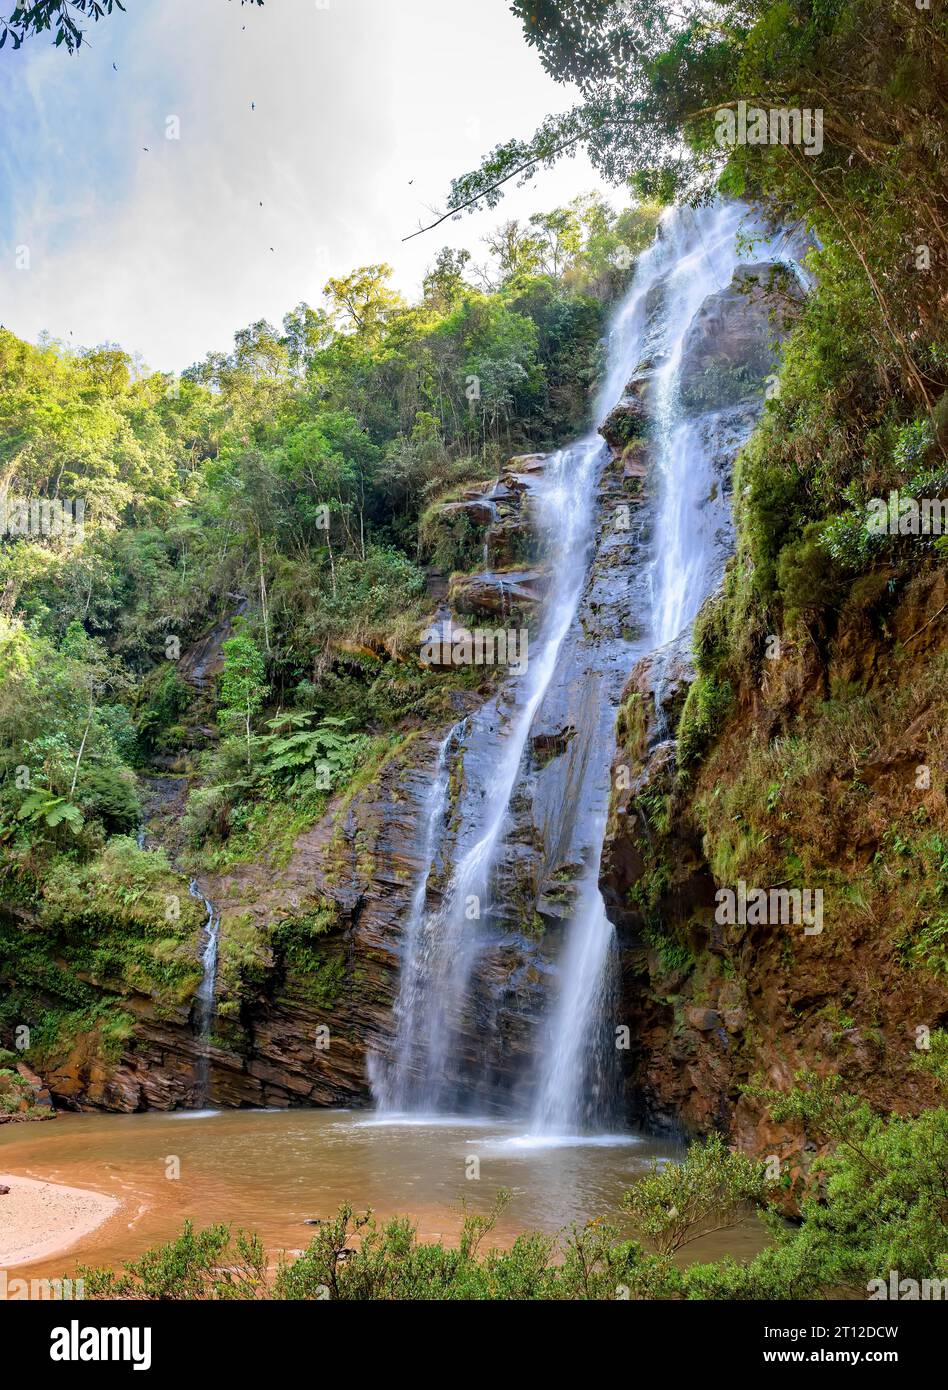 Superbe cascade parmi la végétation dense et les rochers de la forêt tropicale dans l'état de Minas Gerais, Brésil Banque D'Images